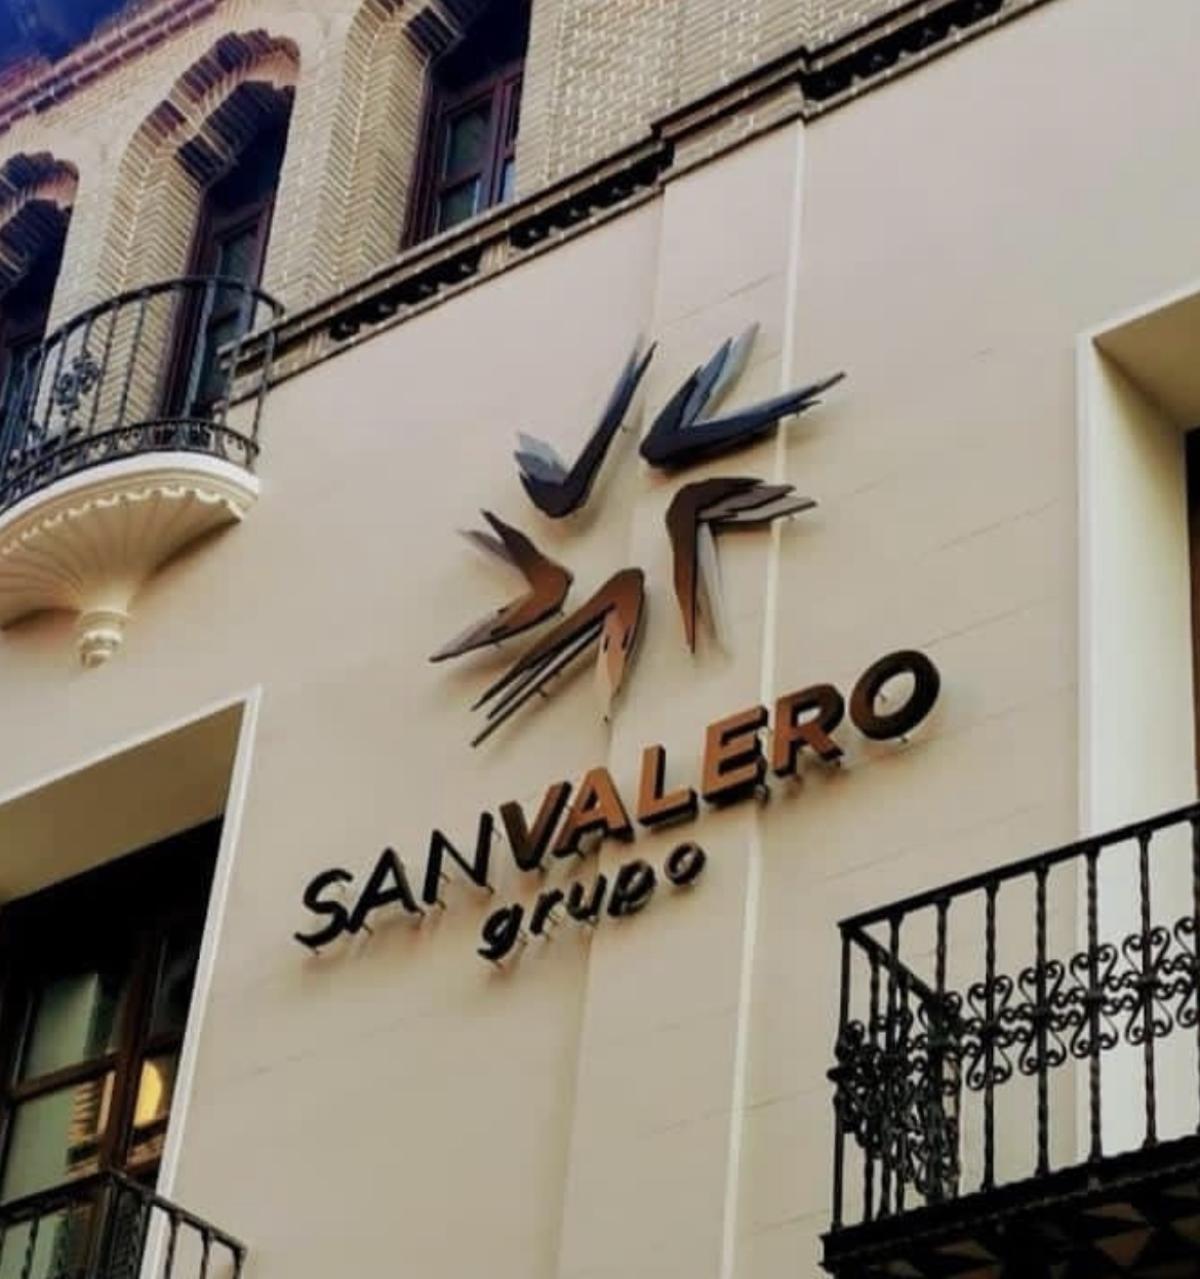 El grupo San Valero cuenta con 21.000 alumnos repartidos por sus cinco centros.